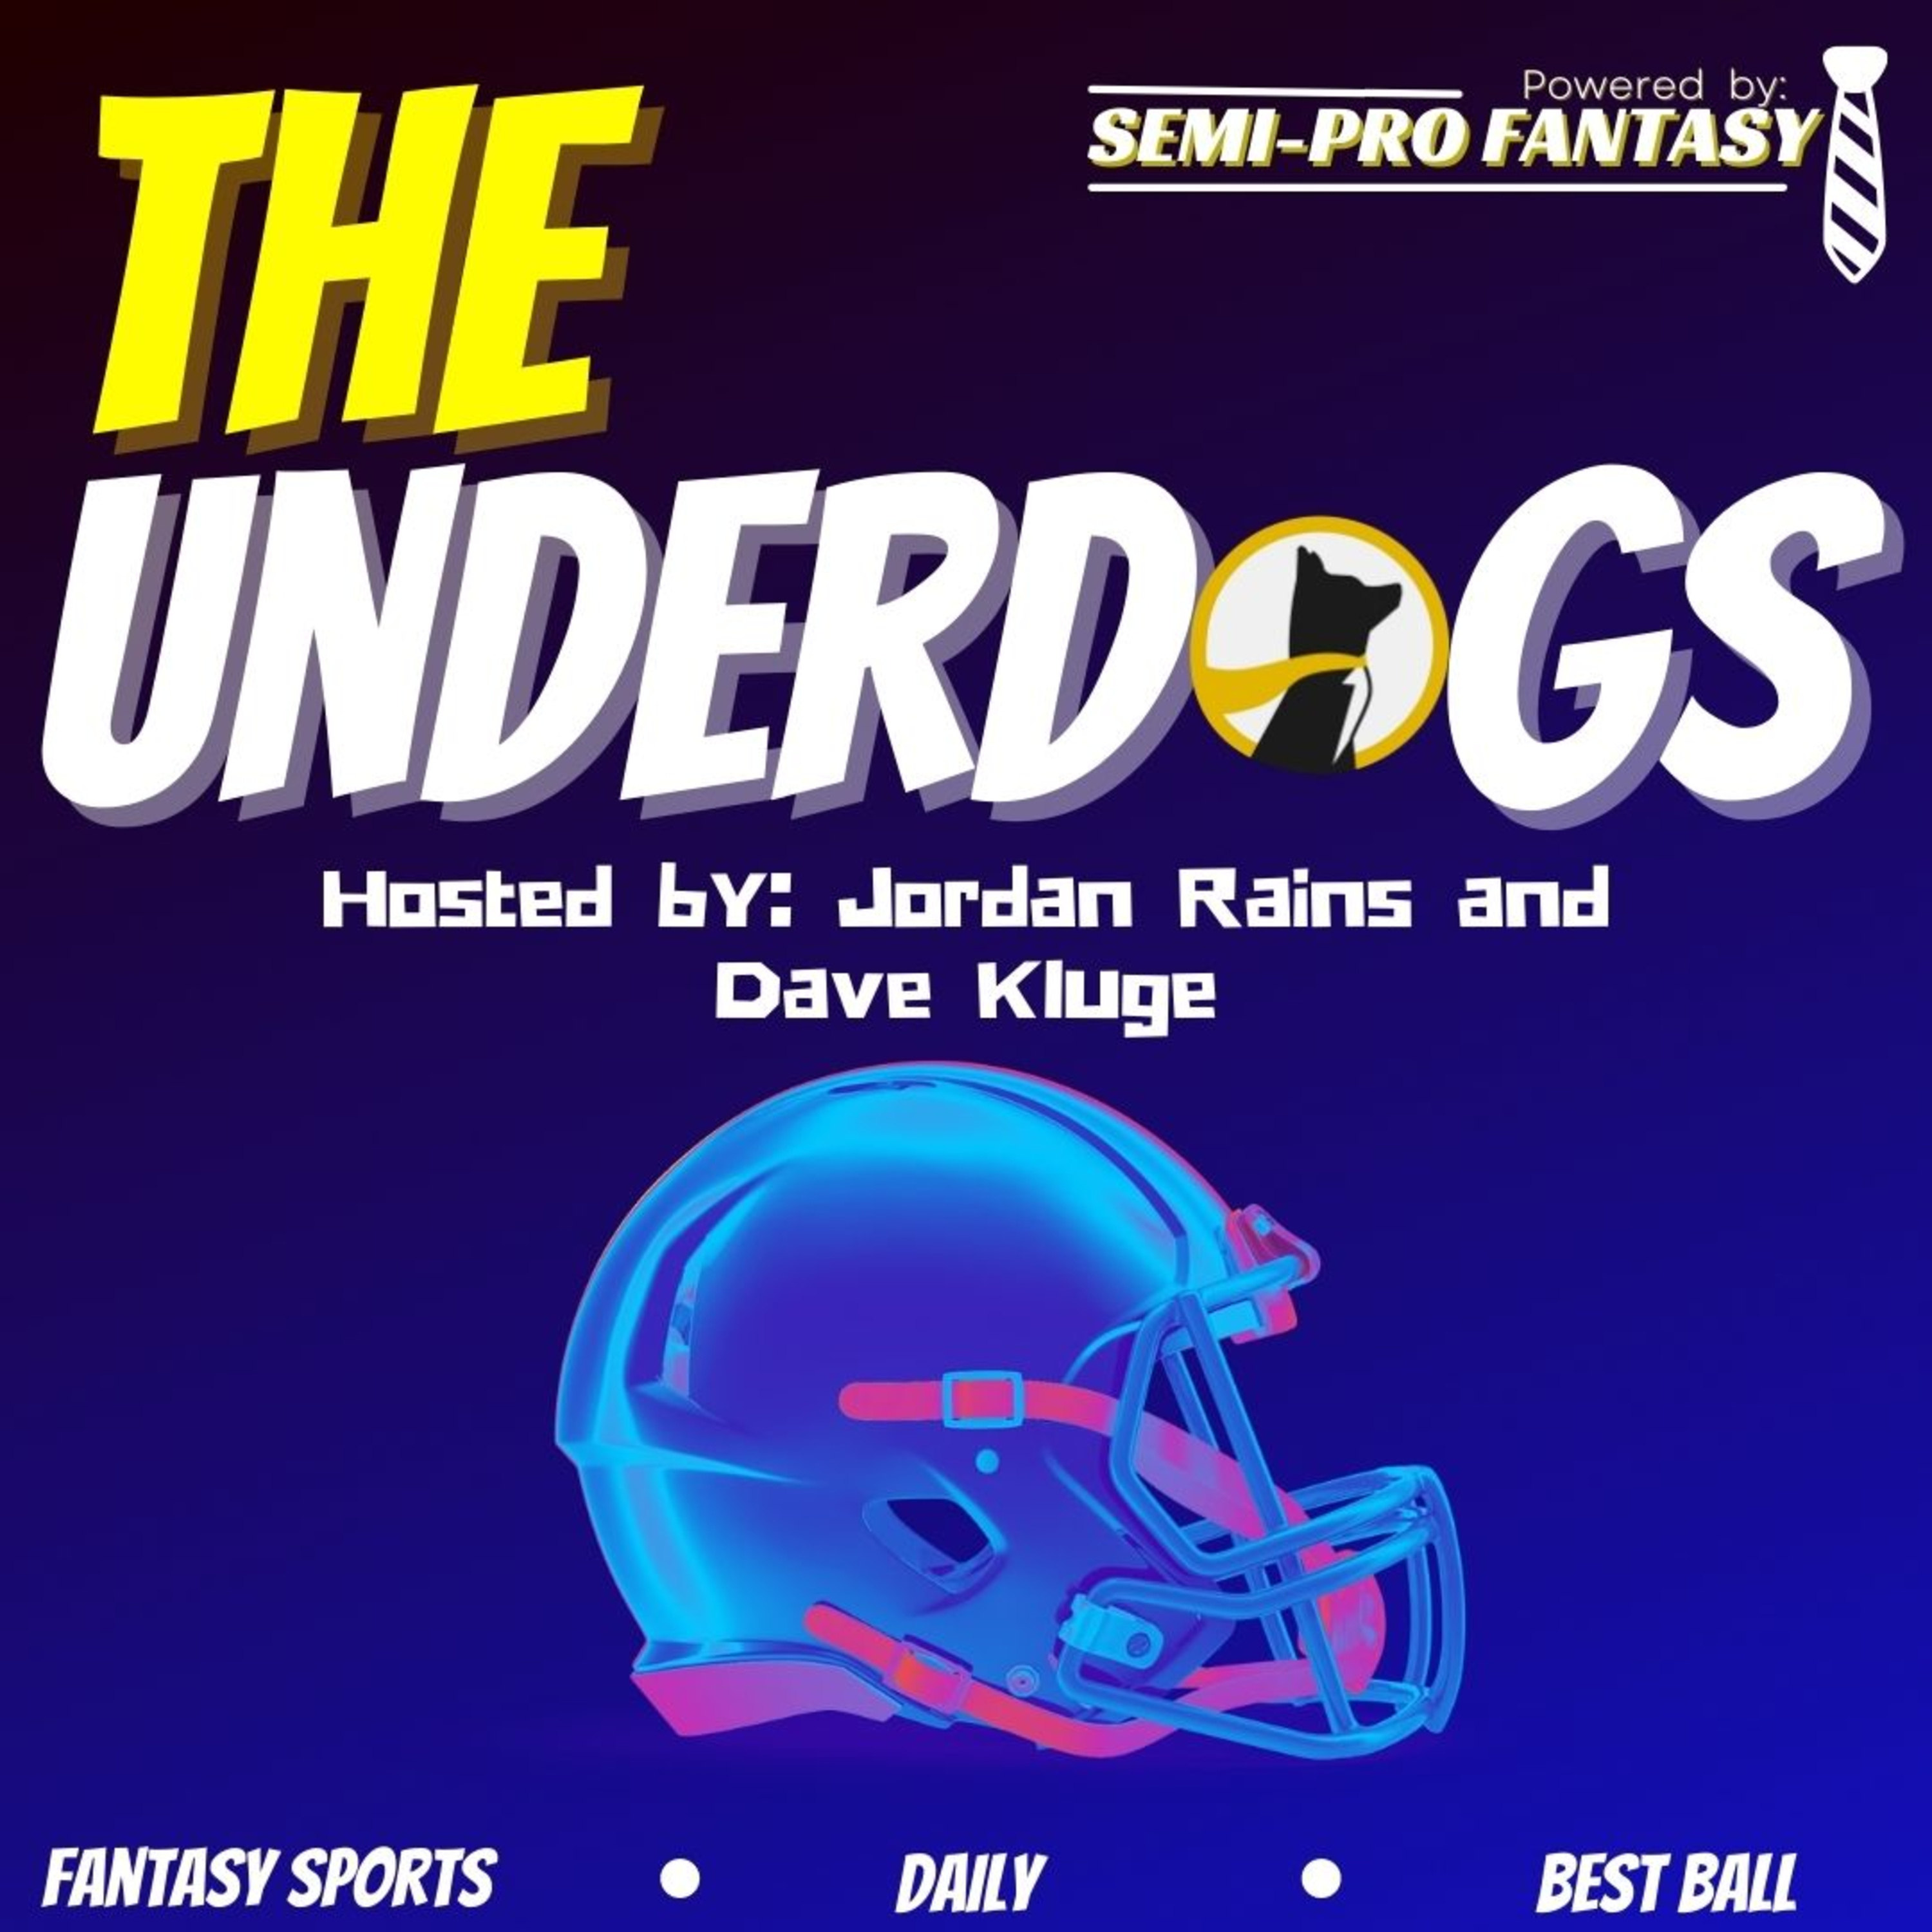 Week 10 Underdog Fantasy Slate Preview + Rankings + 6 Team Draft